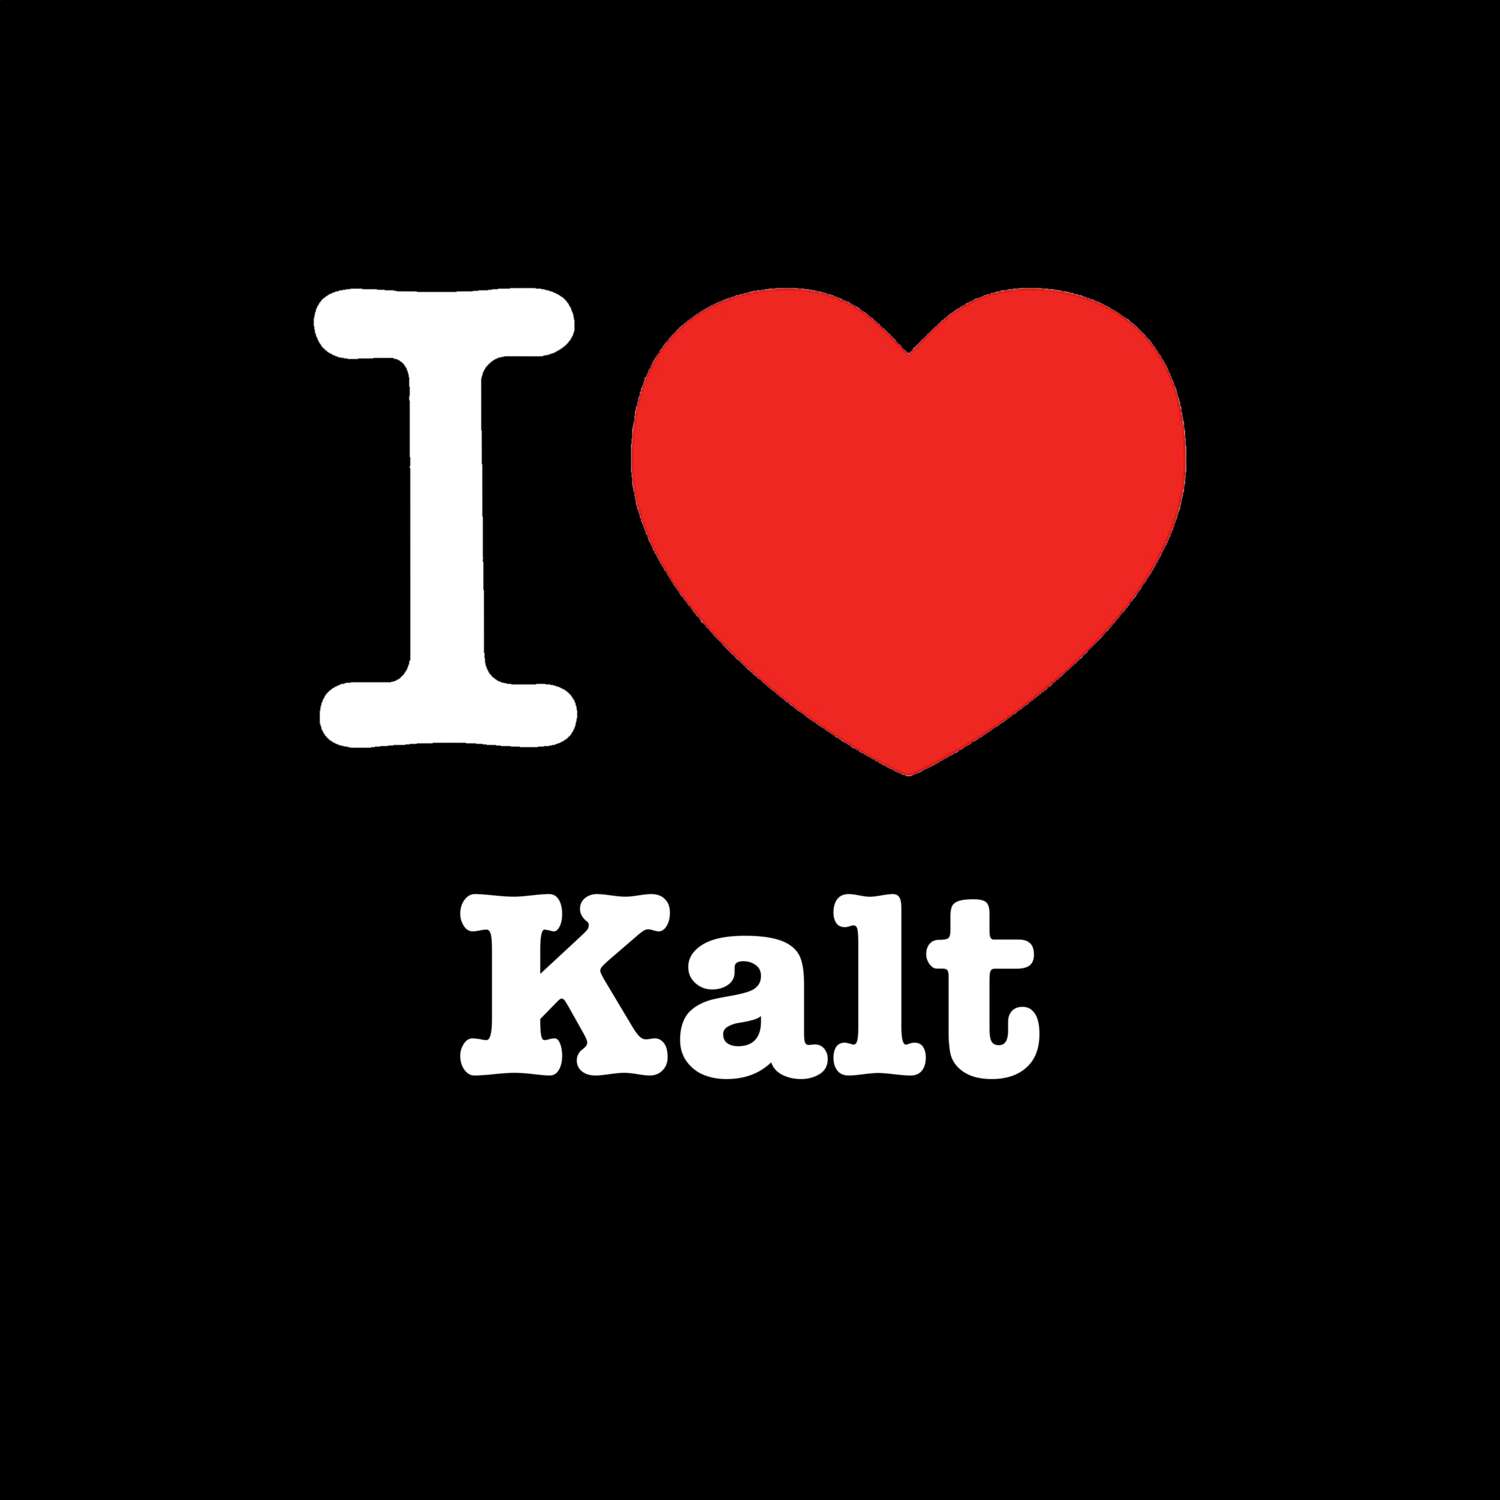 Kalt T-Shirt »I love«